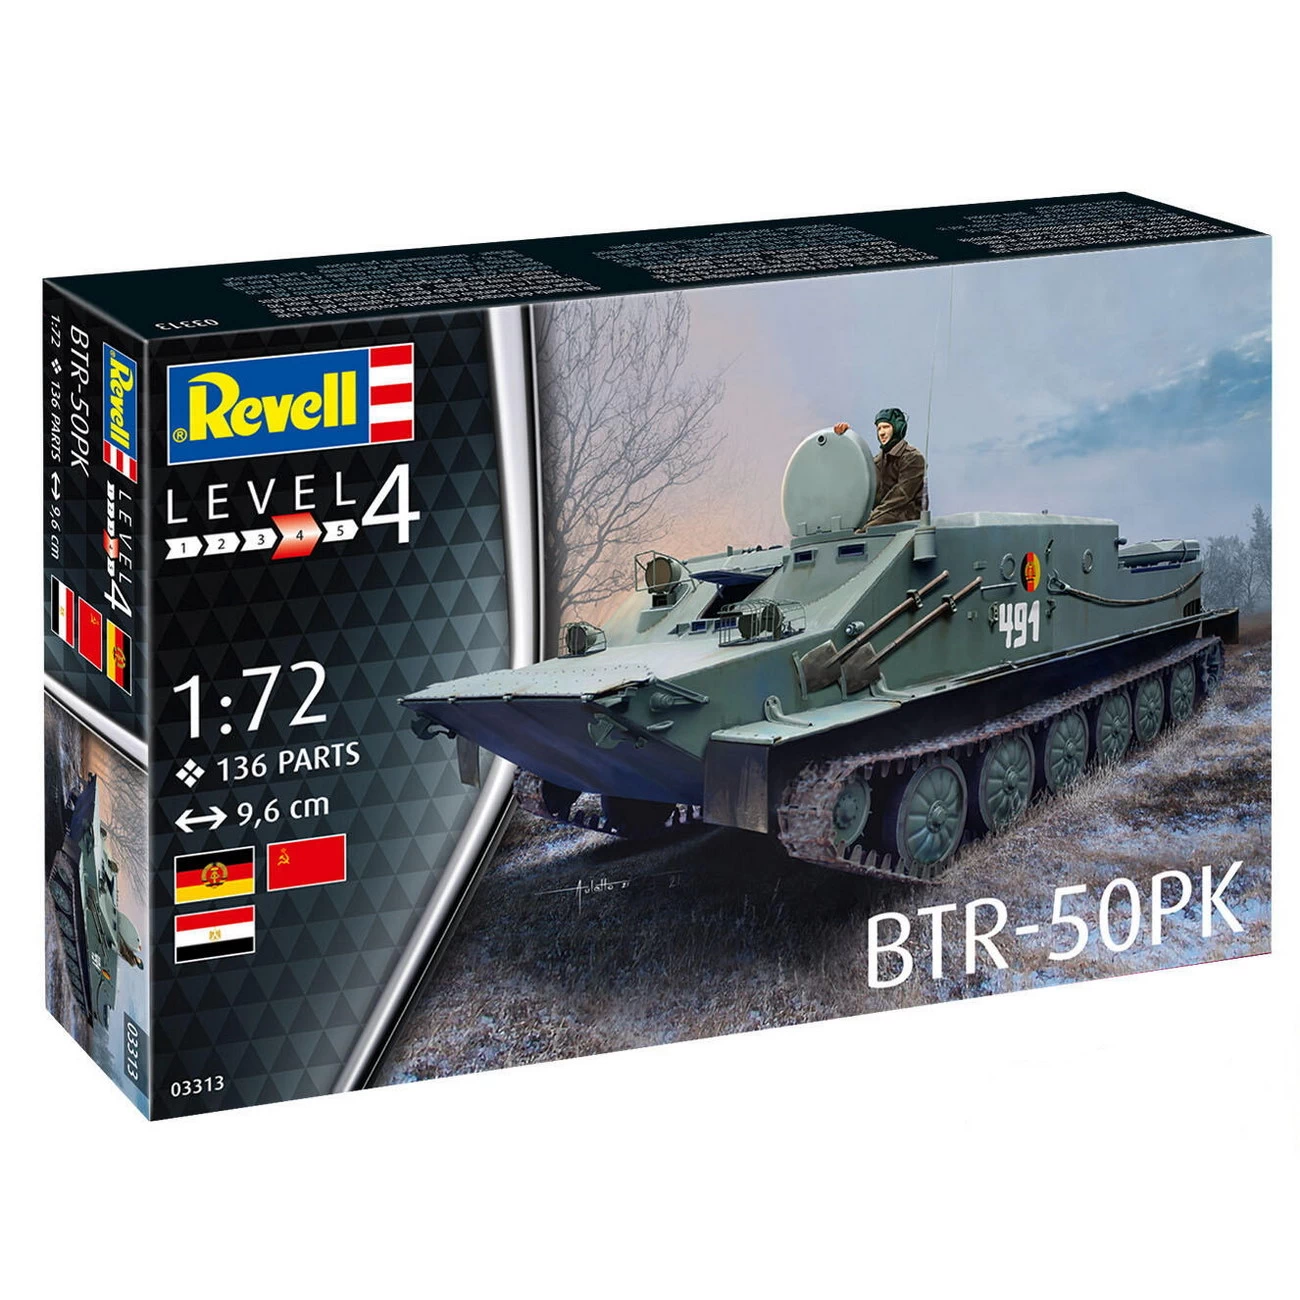 Revell 03313 - BTR-50PK Modell